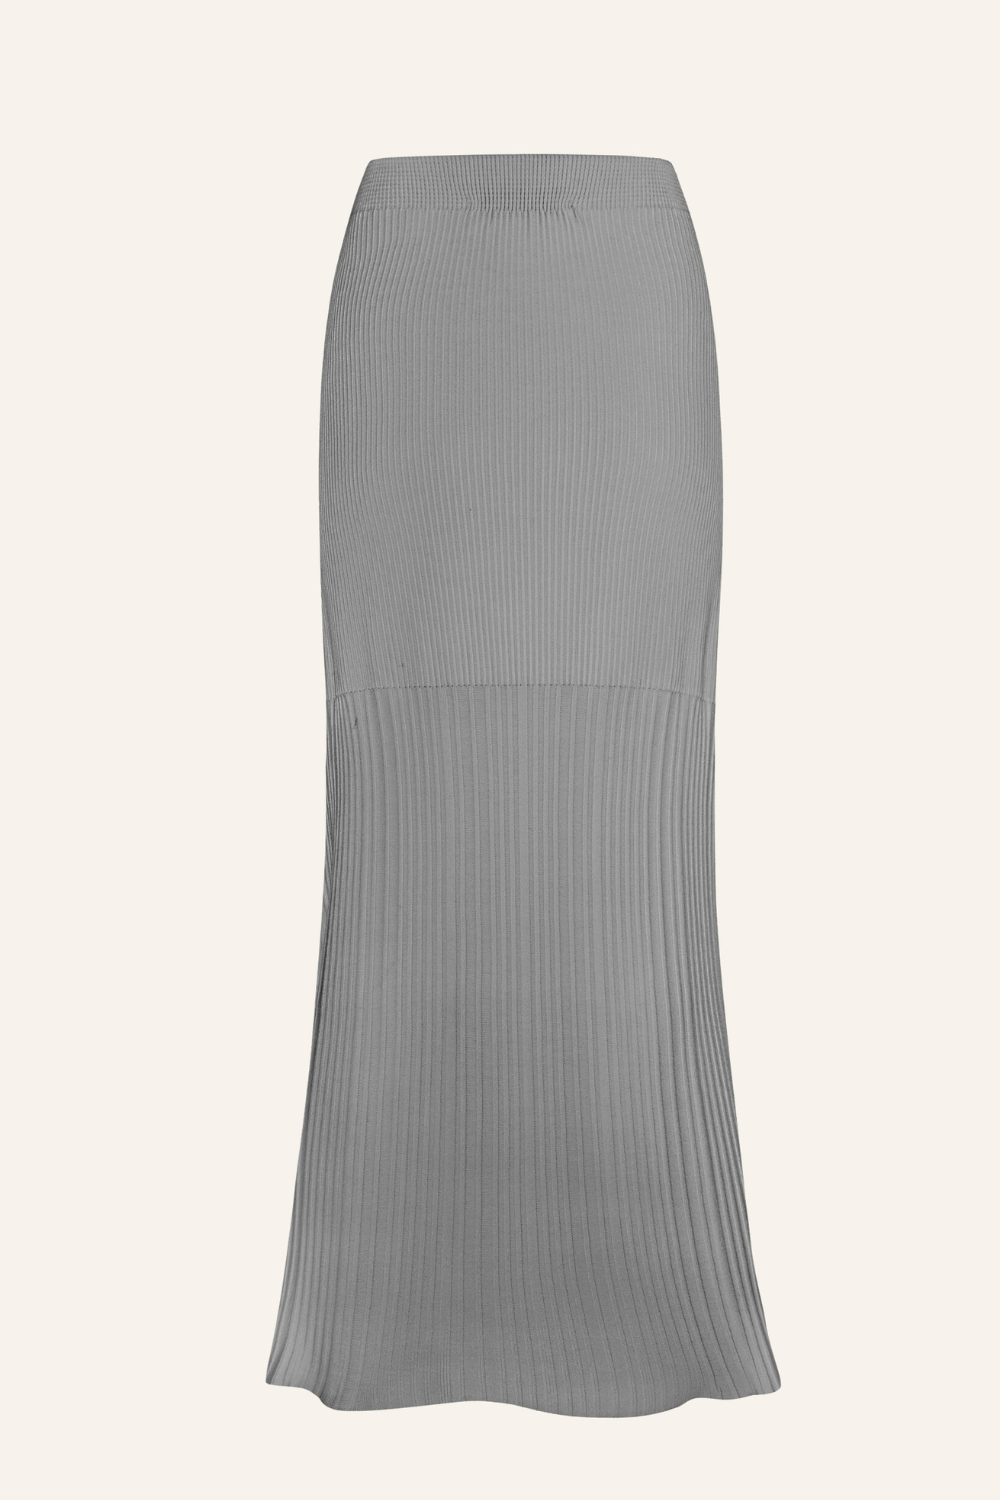 Sukně trikotážní, šedá, (T.Mosca), UOL24-01